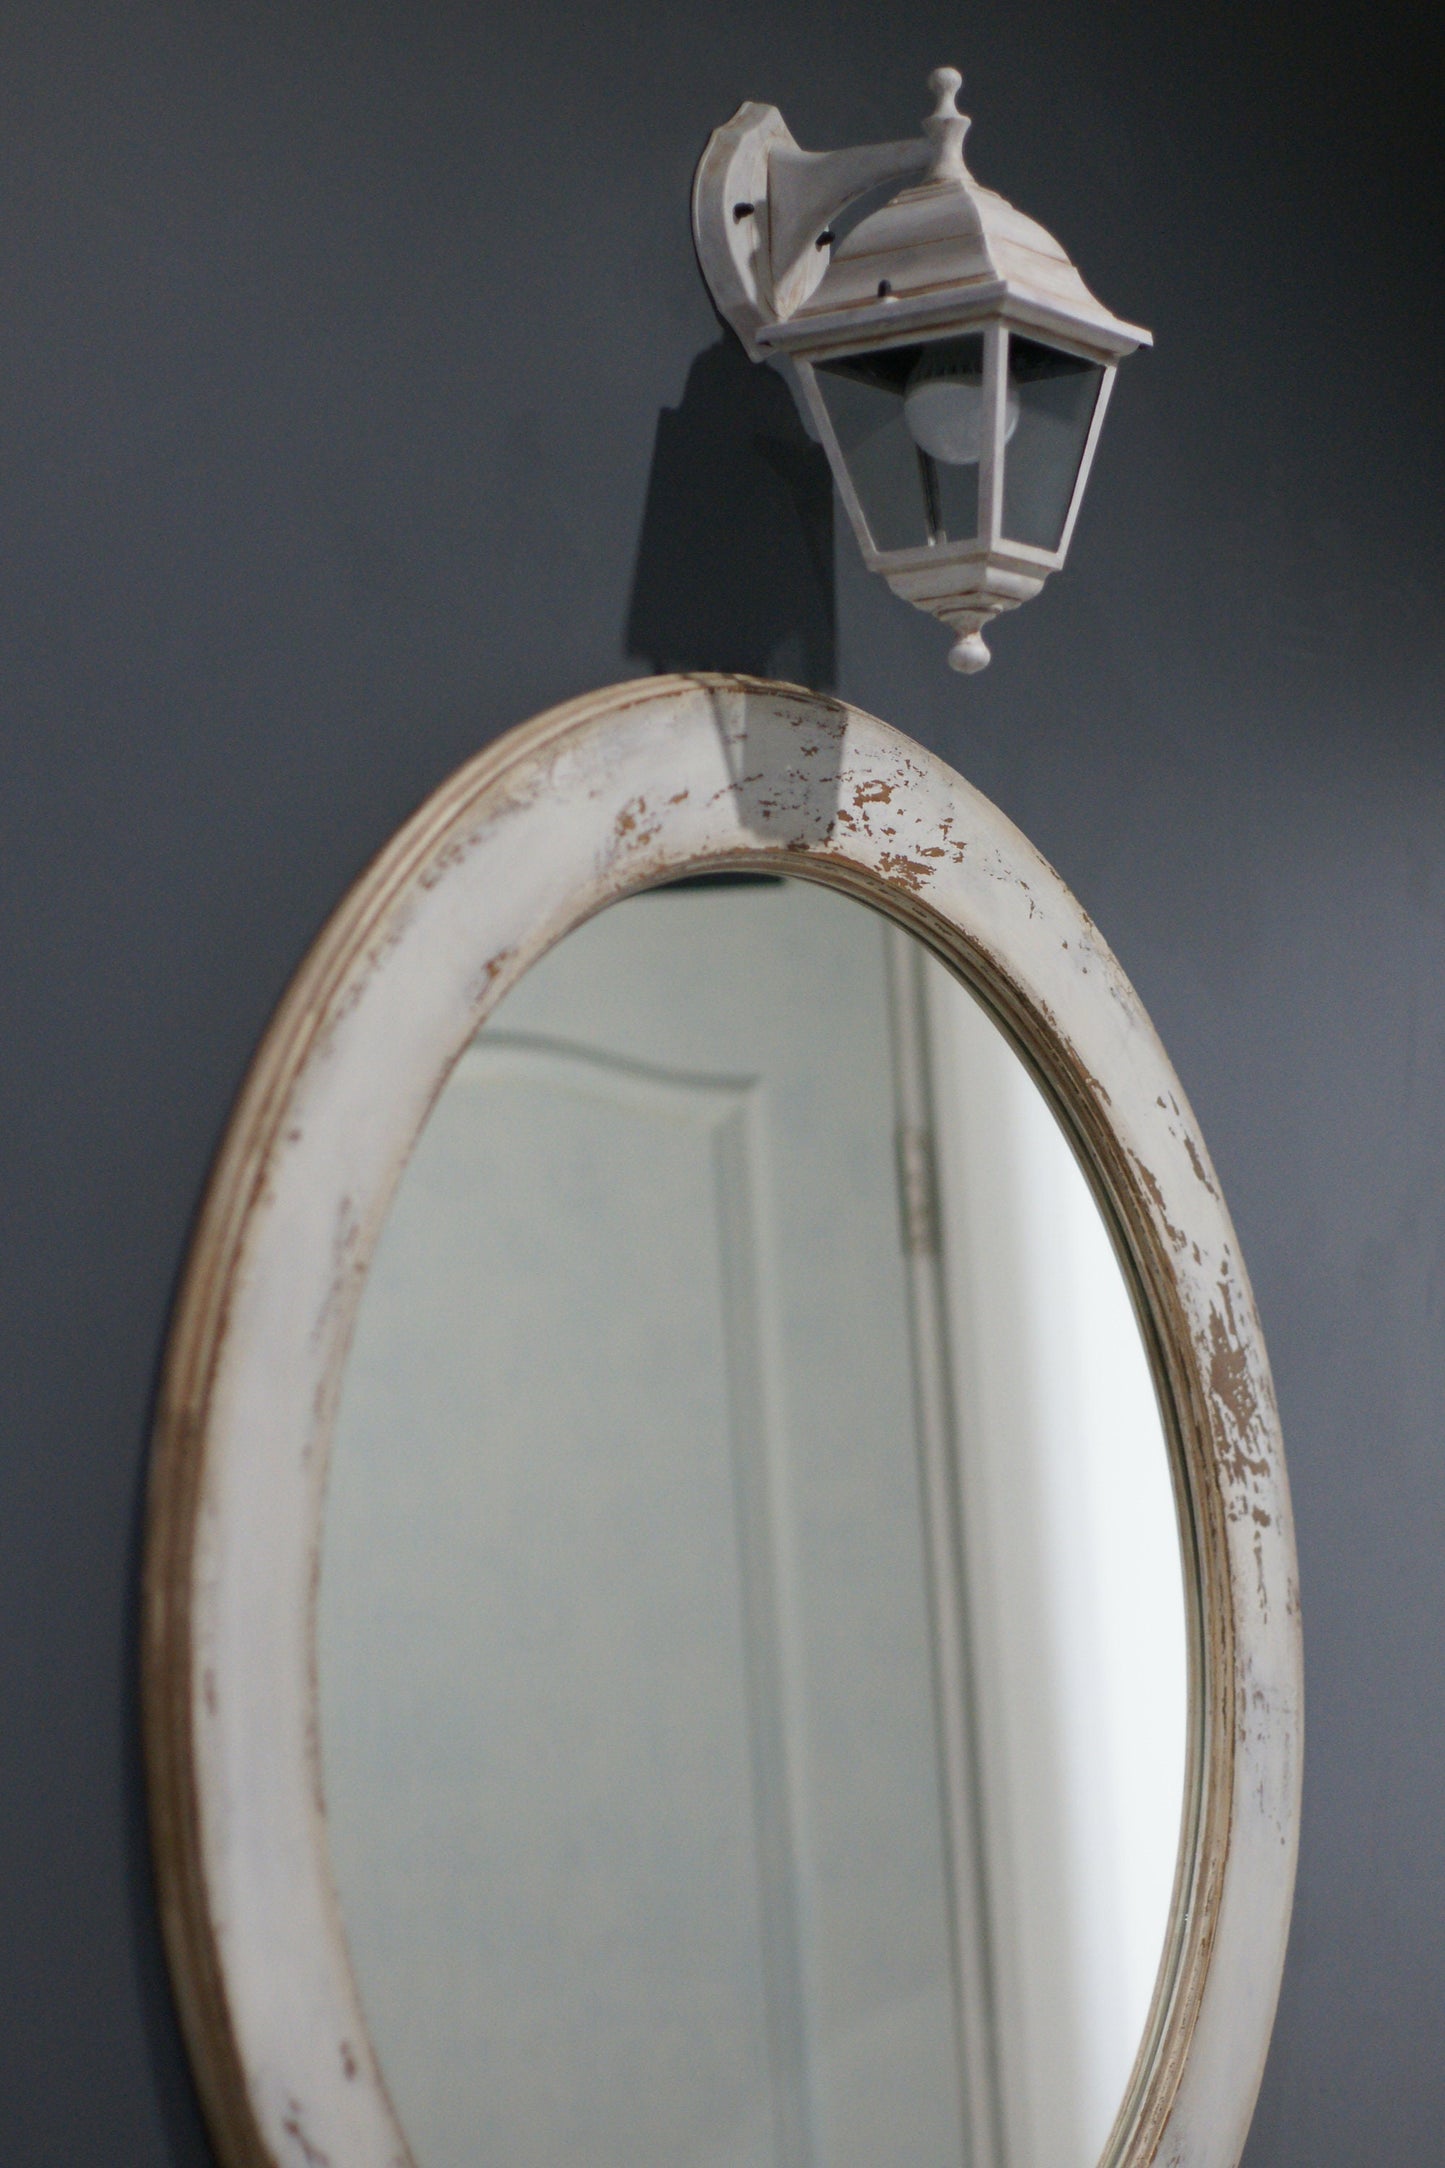 Art deco wood mirror, Scandinavian mirror, Entry mirror, Luxury wall mirror, Large round mirror, Modern hallway mirror, Wall hanging mirror